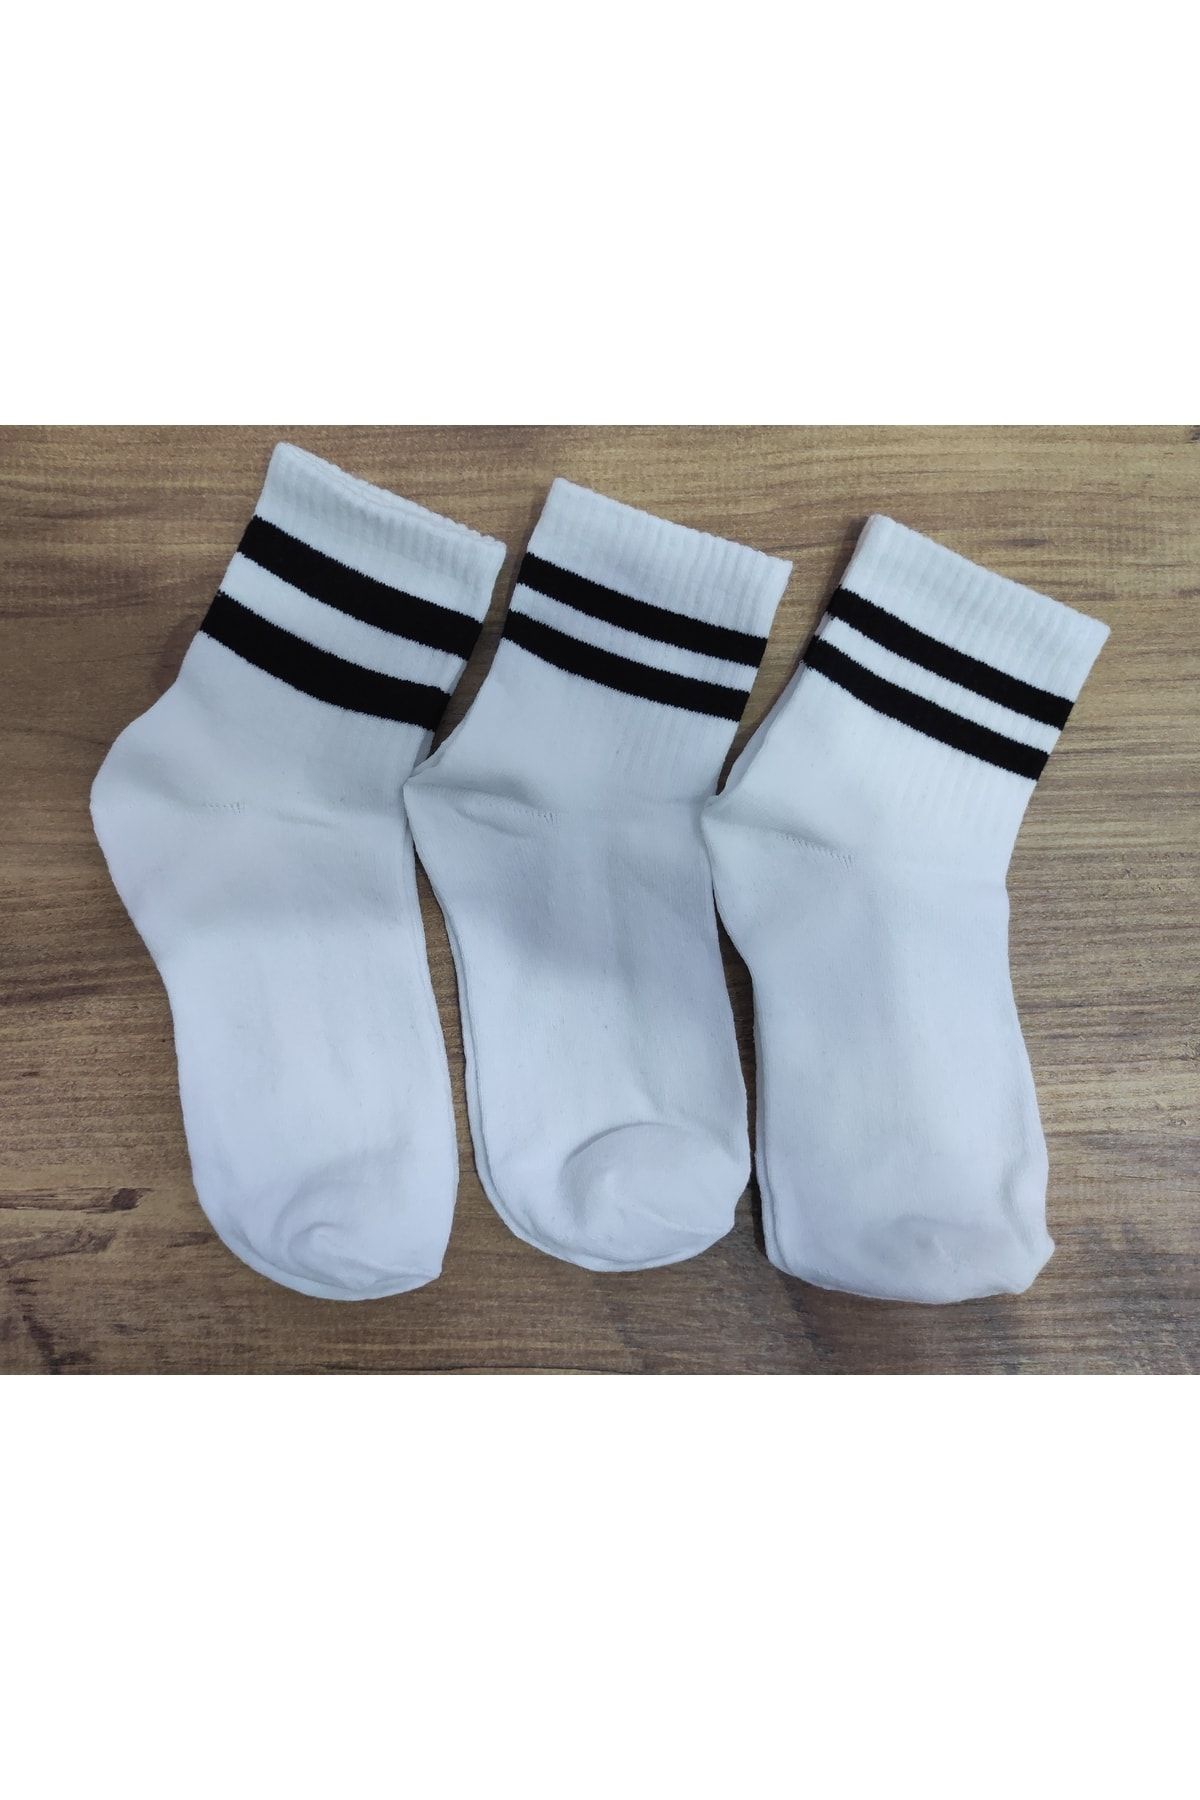 Akel Kadın Beyaz Renkli Siyah Çizgili Çorap 3 Çift